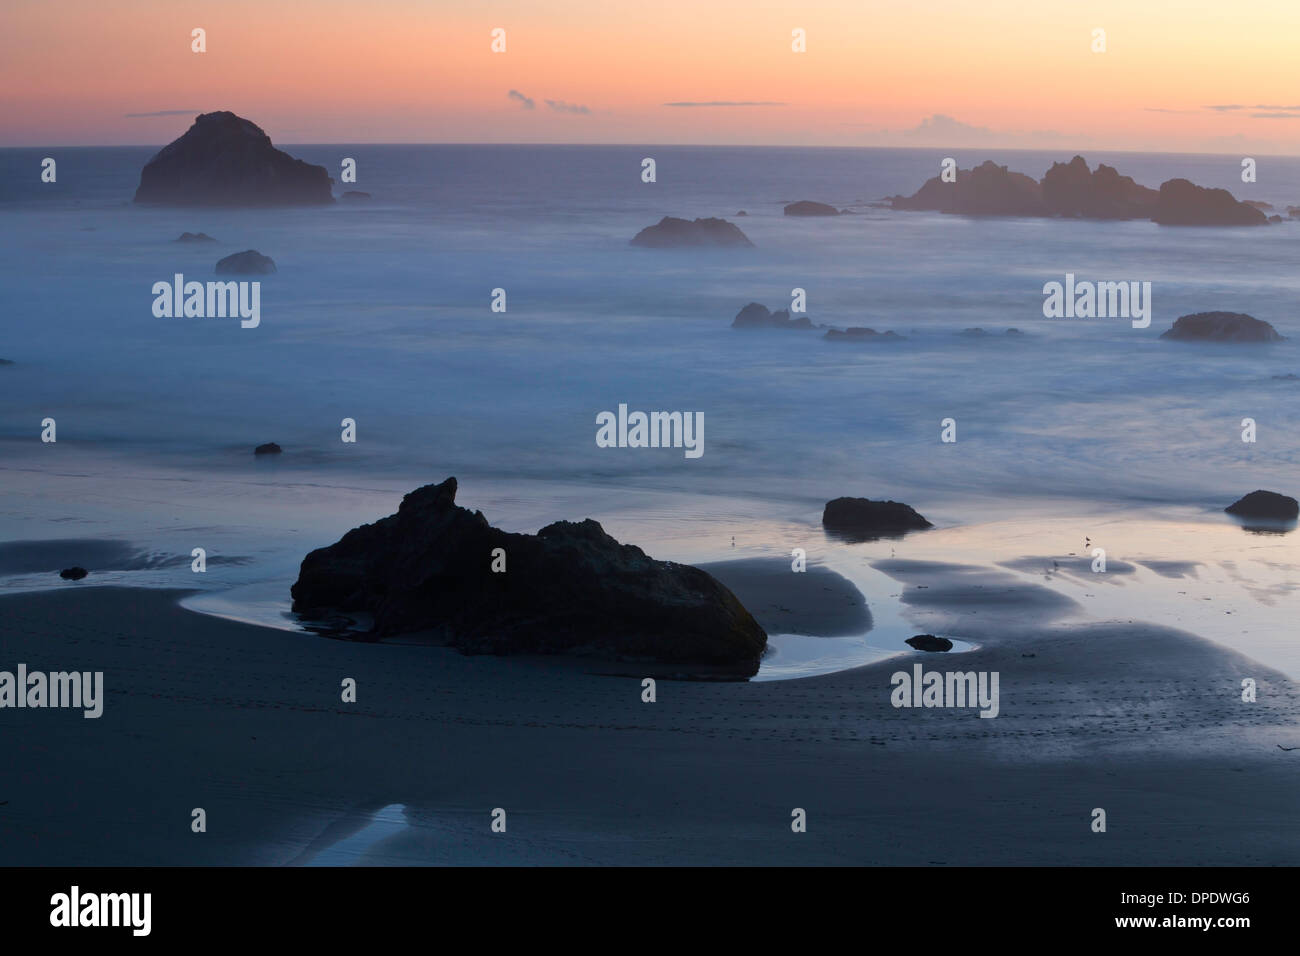 Le soleil se couche sur la plage de Bandon au sud le long de la côte de l'Oregon. USA Banque D'Images